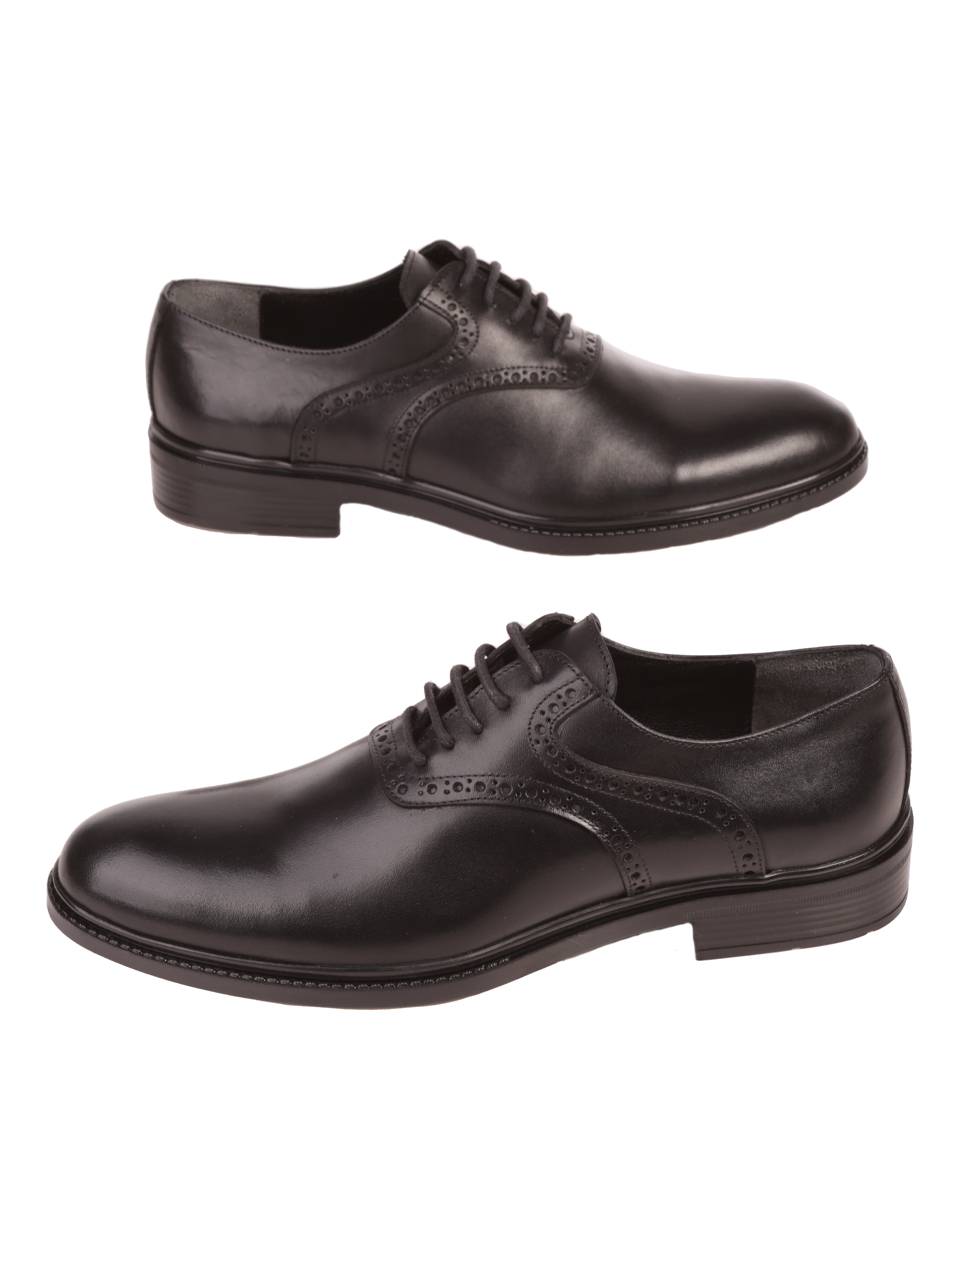 Eлегантни мъжки обувки от естествена кожа в черно 7AT-23739 black